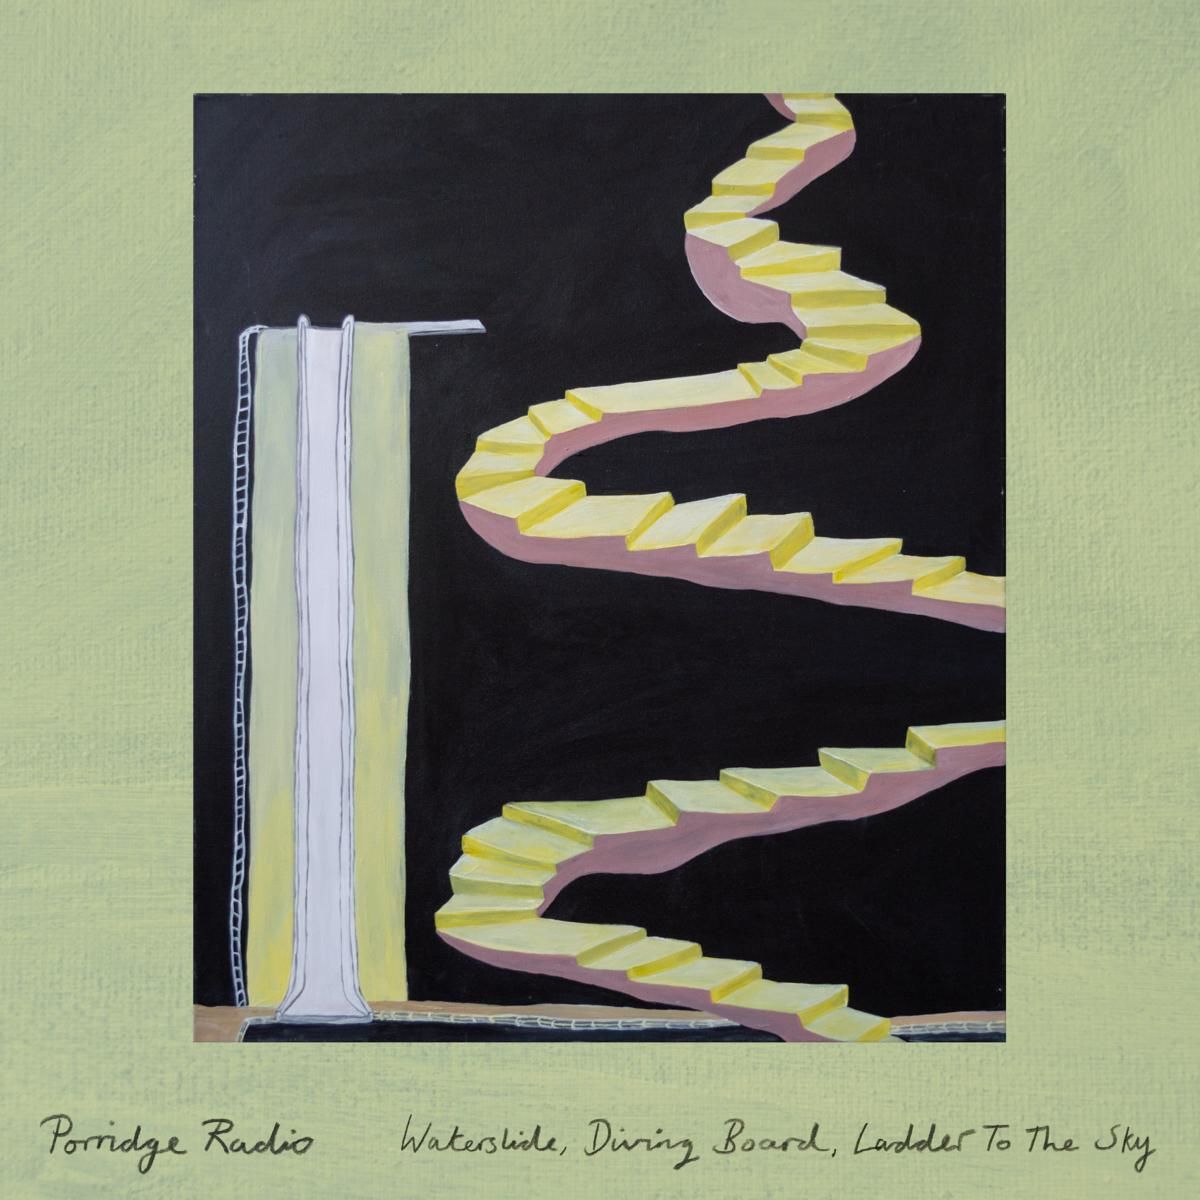 Porridge Radio - Waterslide, Diving Board, Ladder To The Sky: CD 